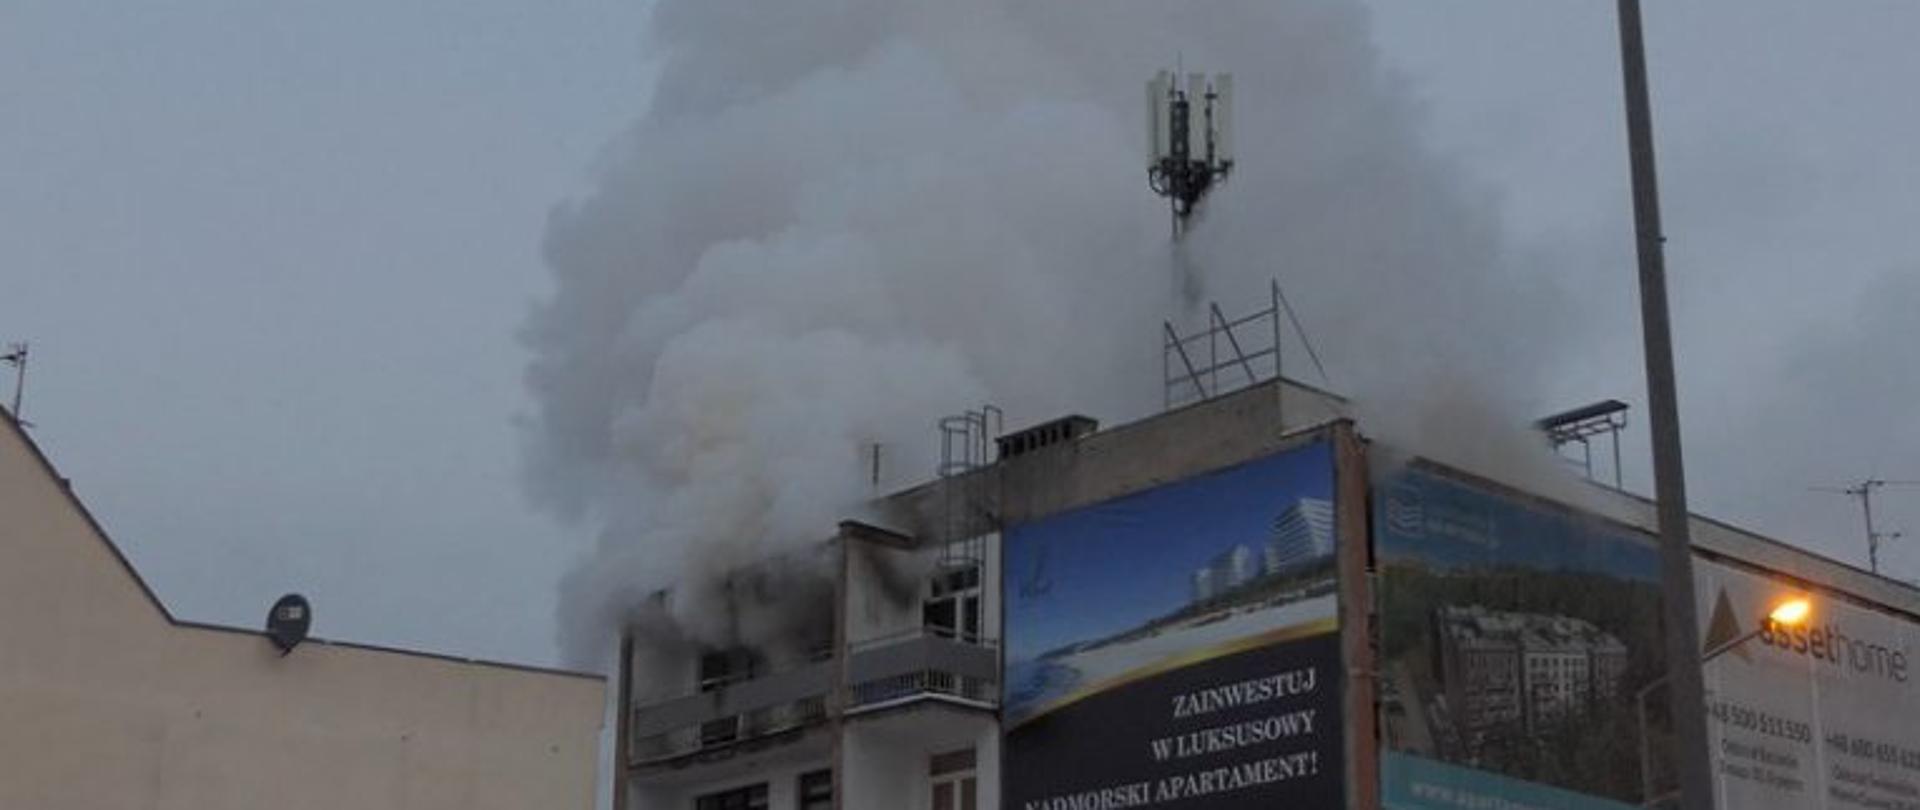 Zdjęcie przedstawia budynek 3 kondygnacyjny, na ostatniej kondygnacji wydobywa się dym.